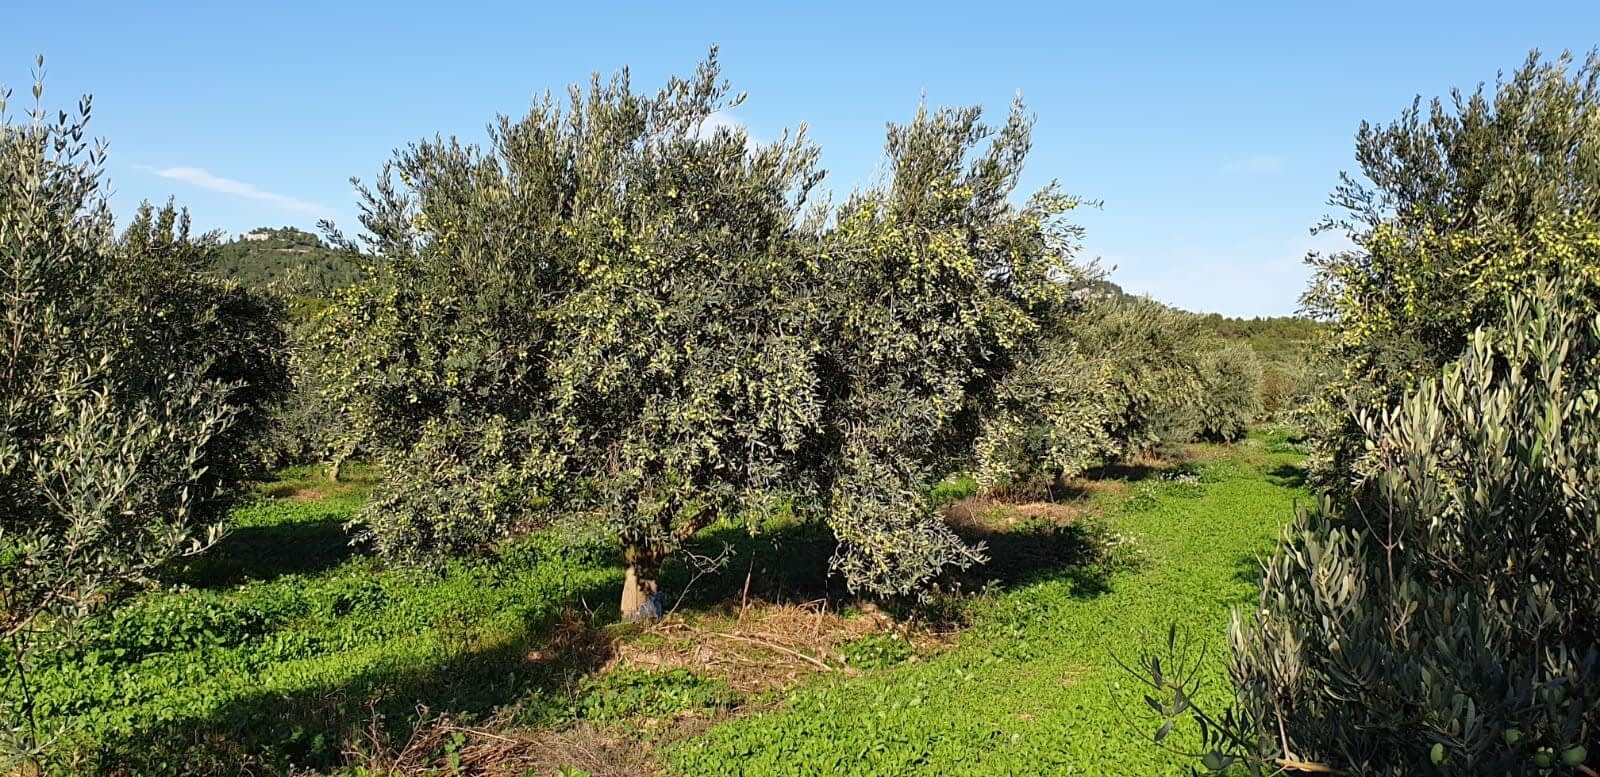 profielen-de-beste-olijfolie-productie-europa-een-familie-traditie-wortelt-in-moulin-de-la-coquille-olijfolie-tijden